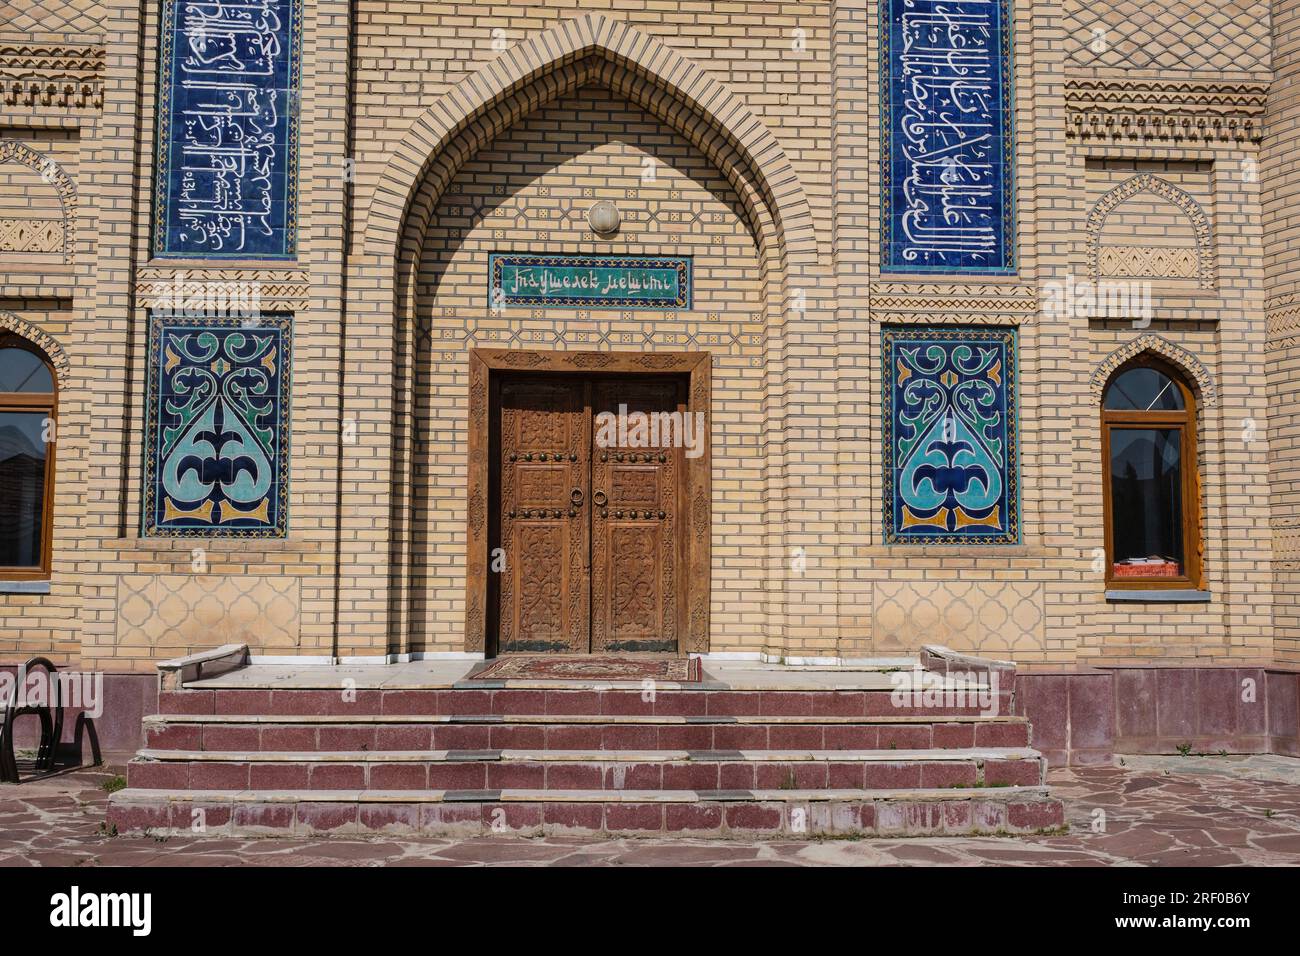 Kazakistan, ingresso decorativo della moschea di Saty Village. Foto Stock